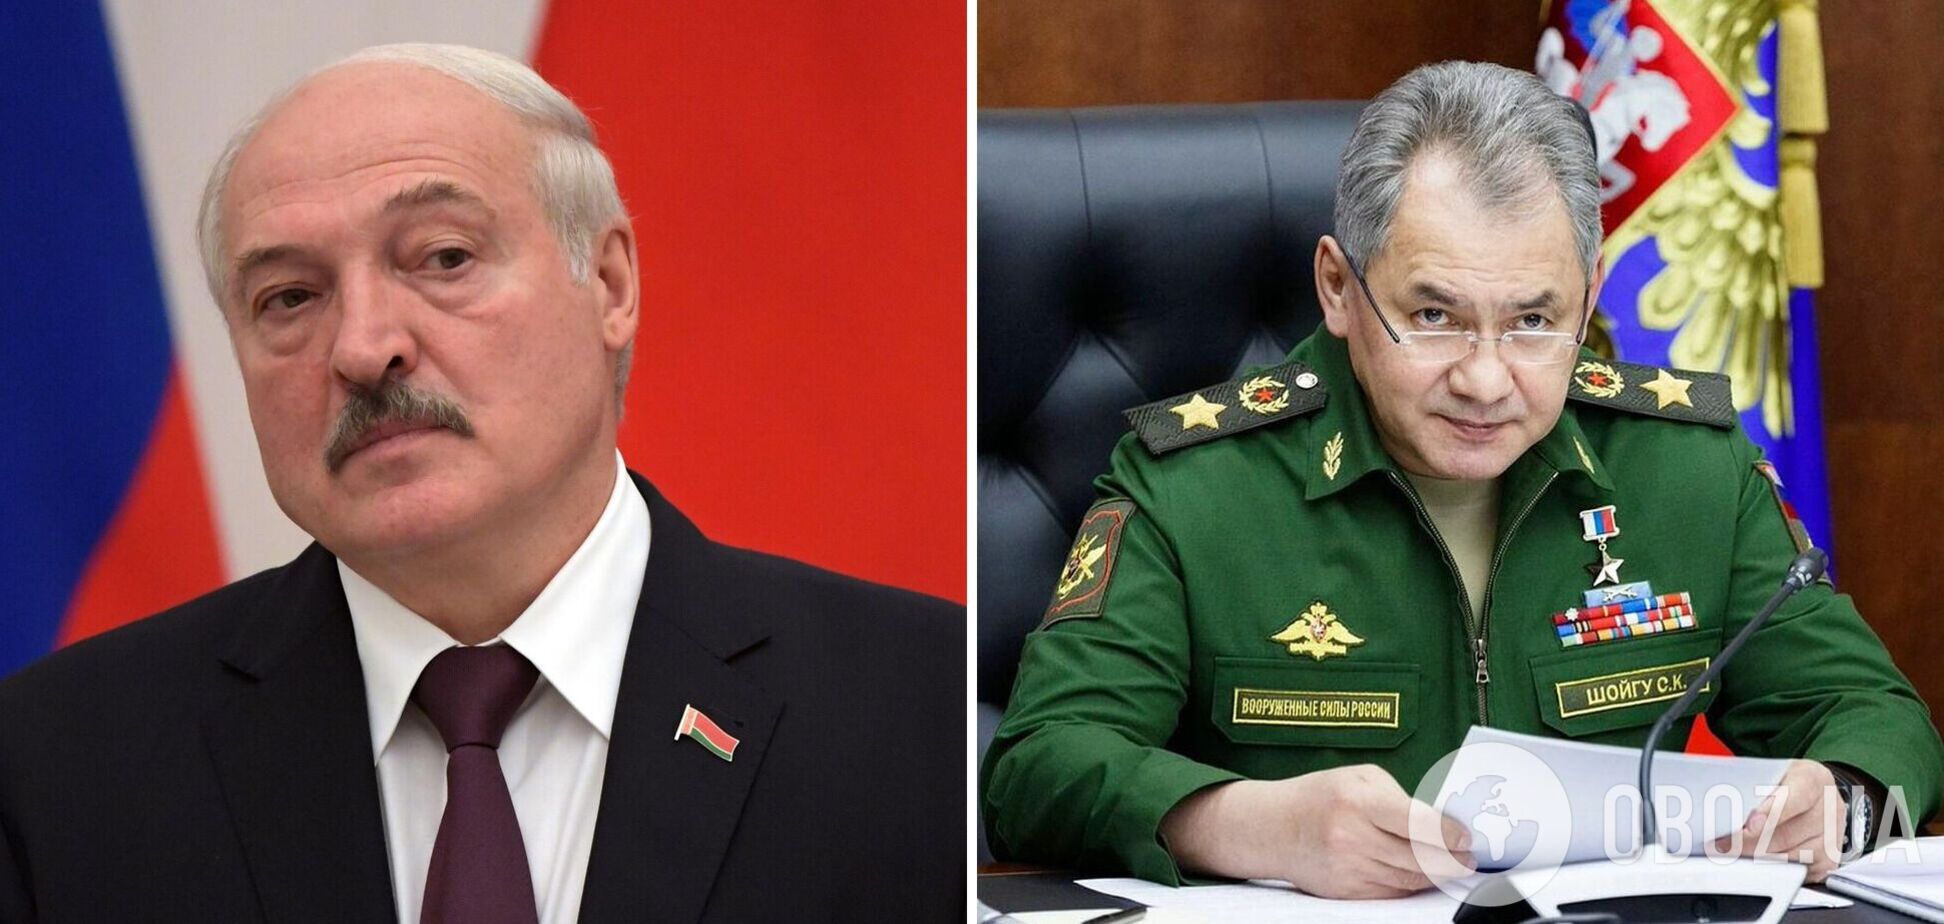 Лукашенко на встрече с Шойгу: Украина не готова к переговорам, потому что 'хочет воевать до последнего то ли украинца, то ли поляка'